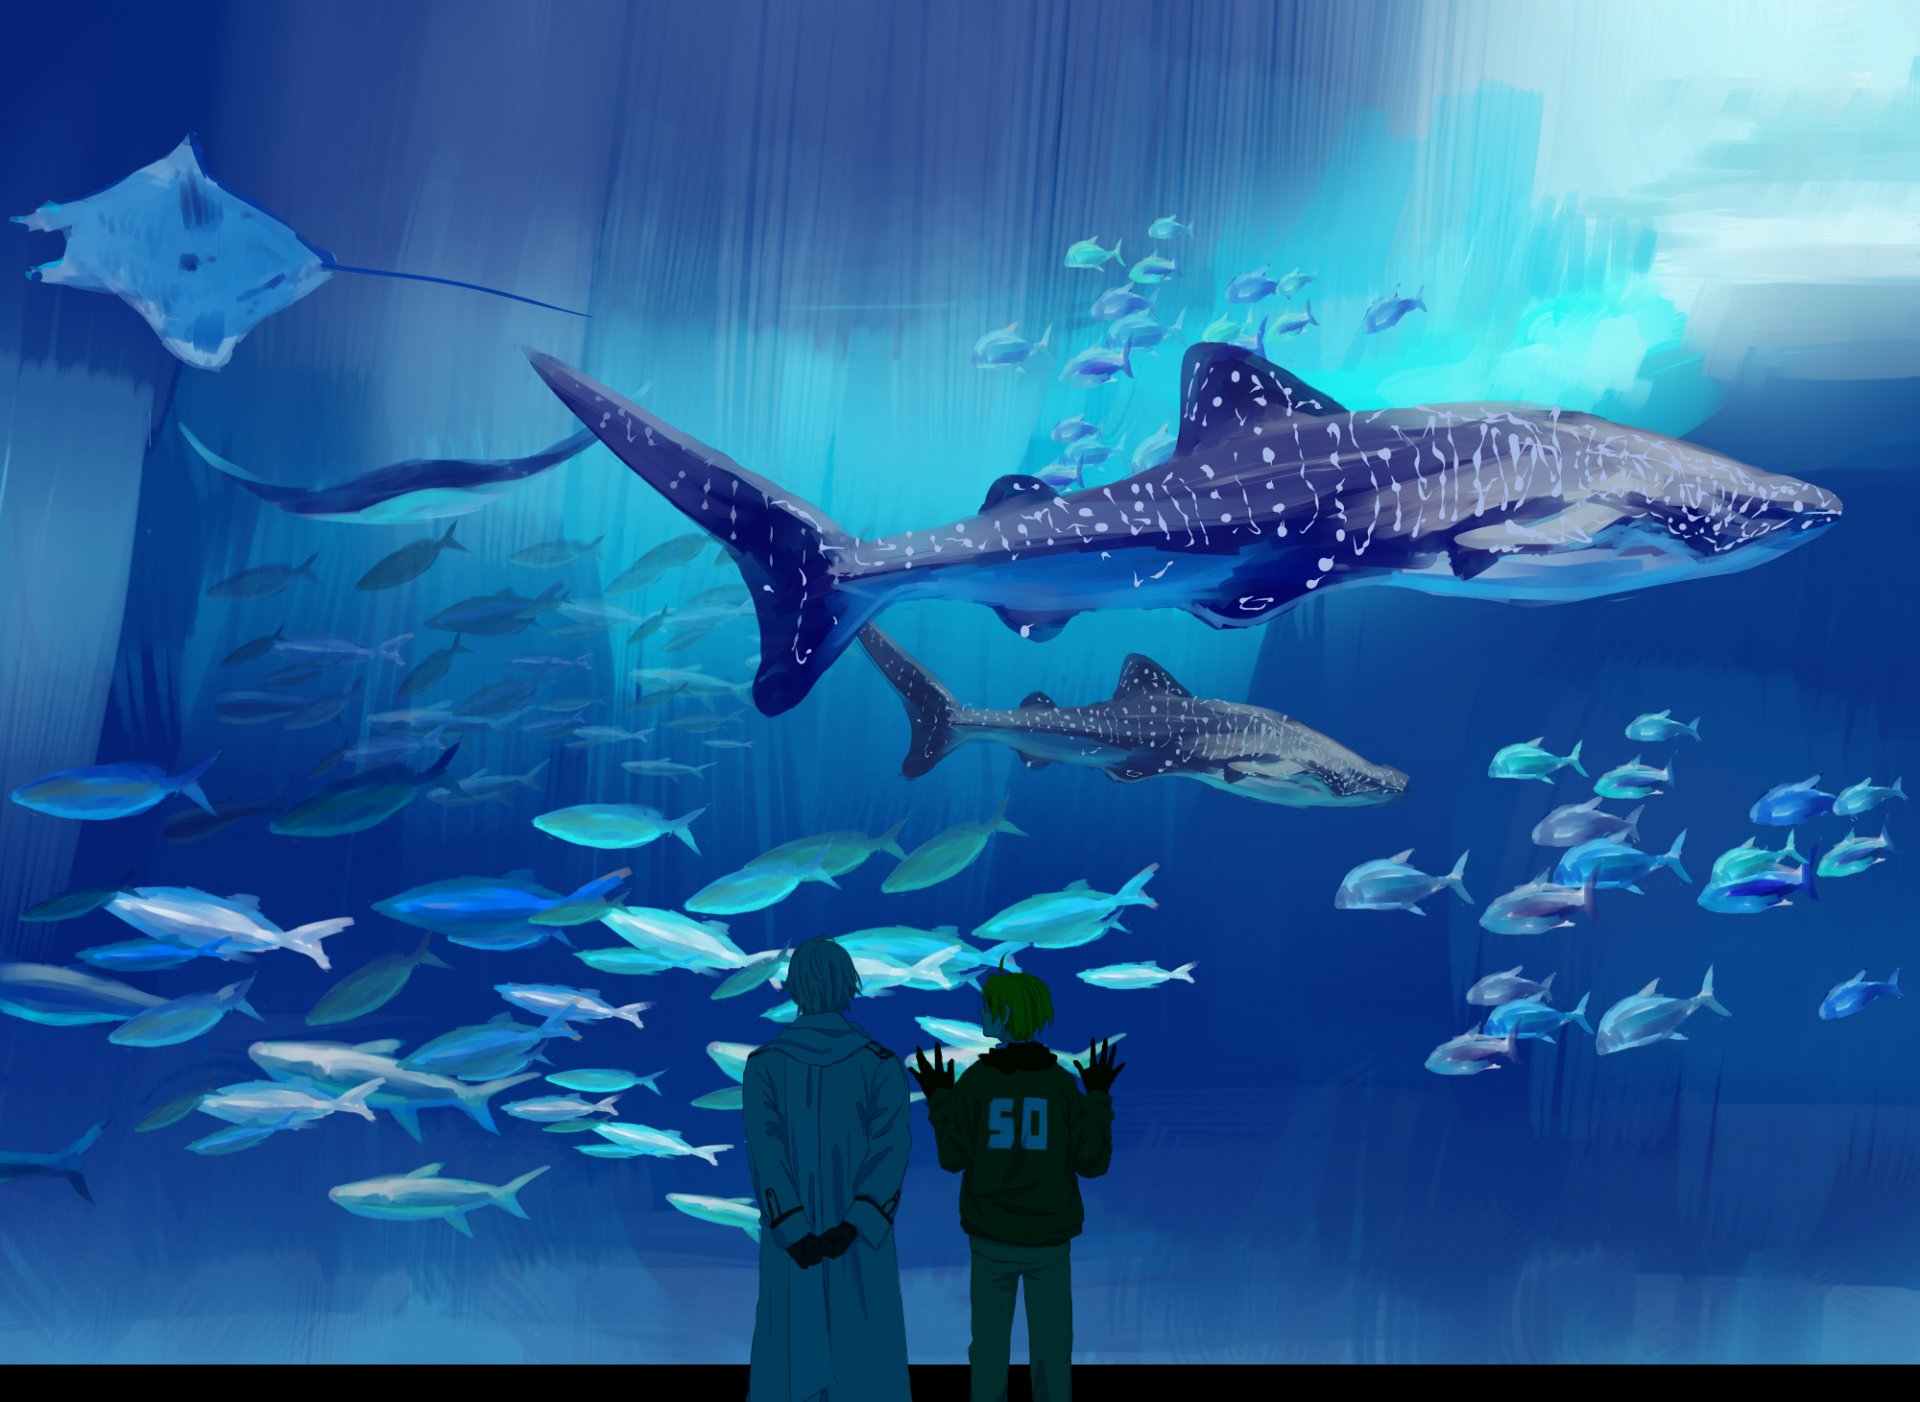 костюмы супергерой океанариум аниме хеталия и страны оси большой аквариум морские млекопитающие скат акула наблюдение арт